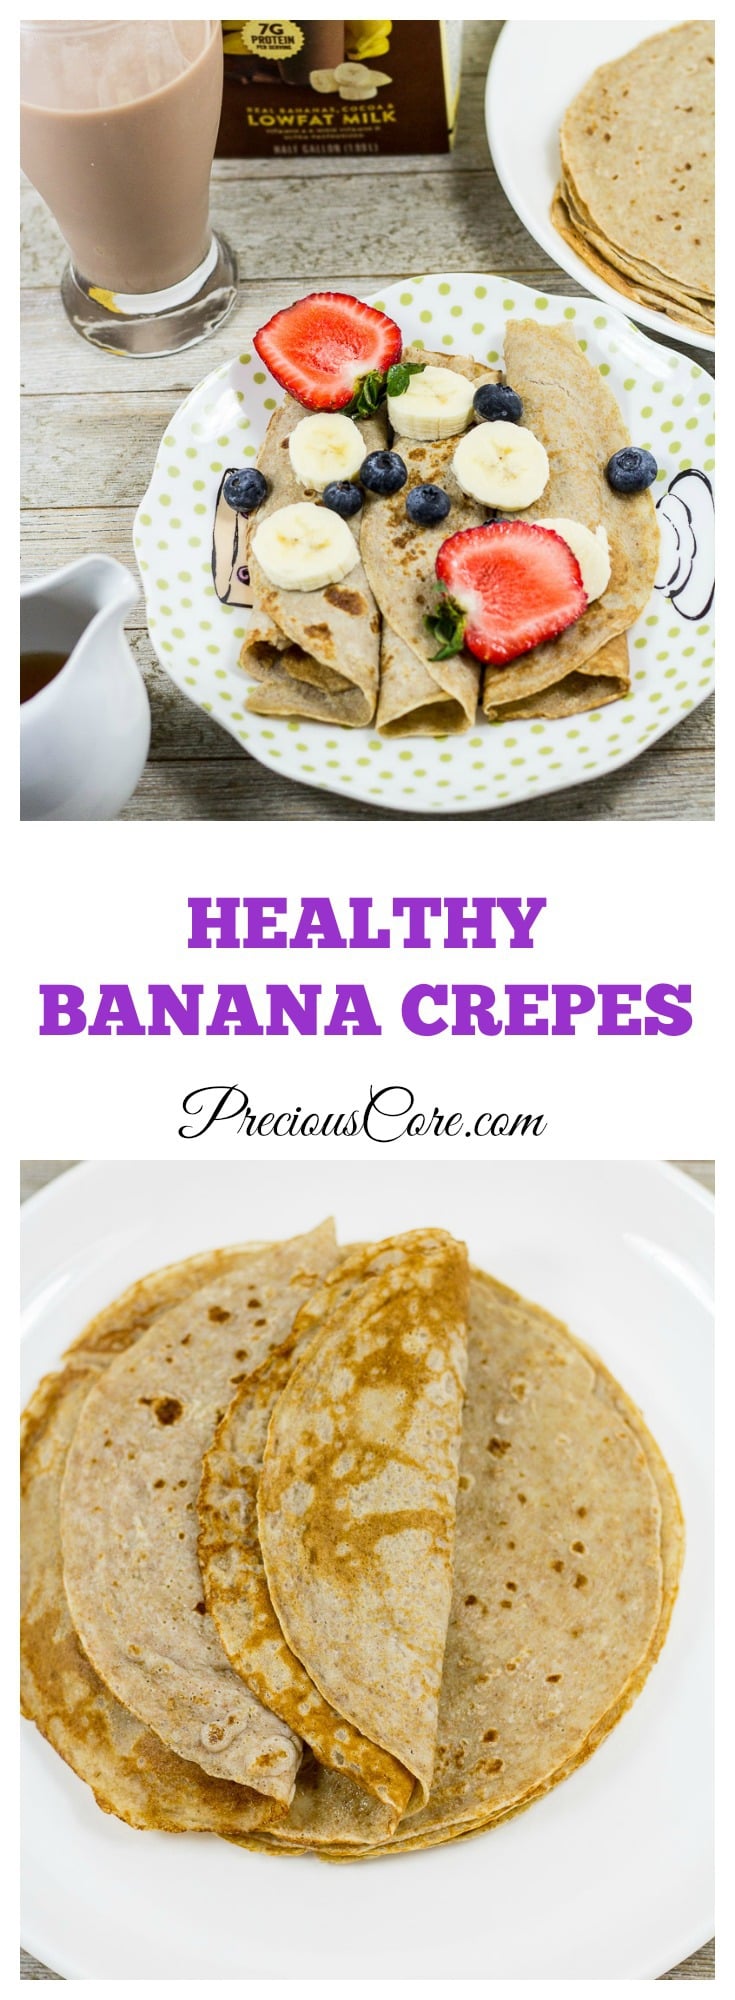 Banana Crepes - Healthy breakfast recipe - Precious Core